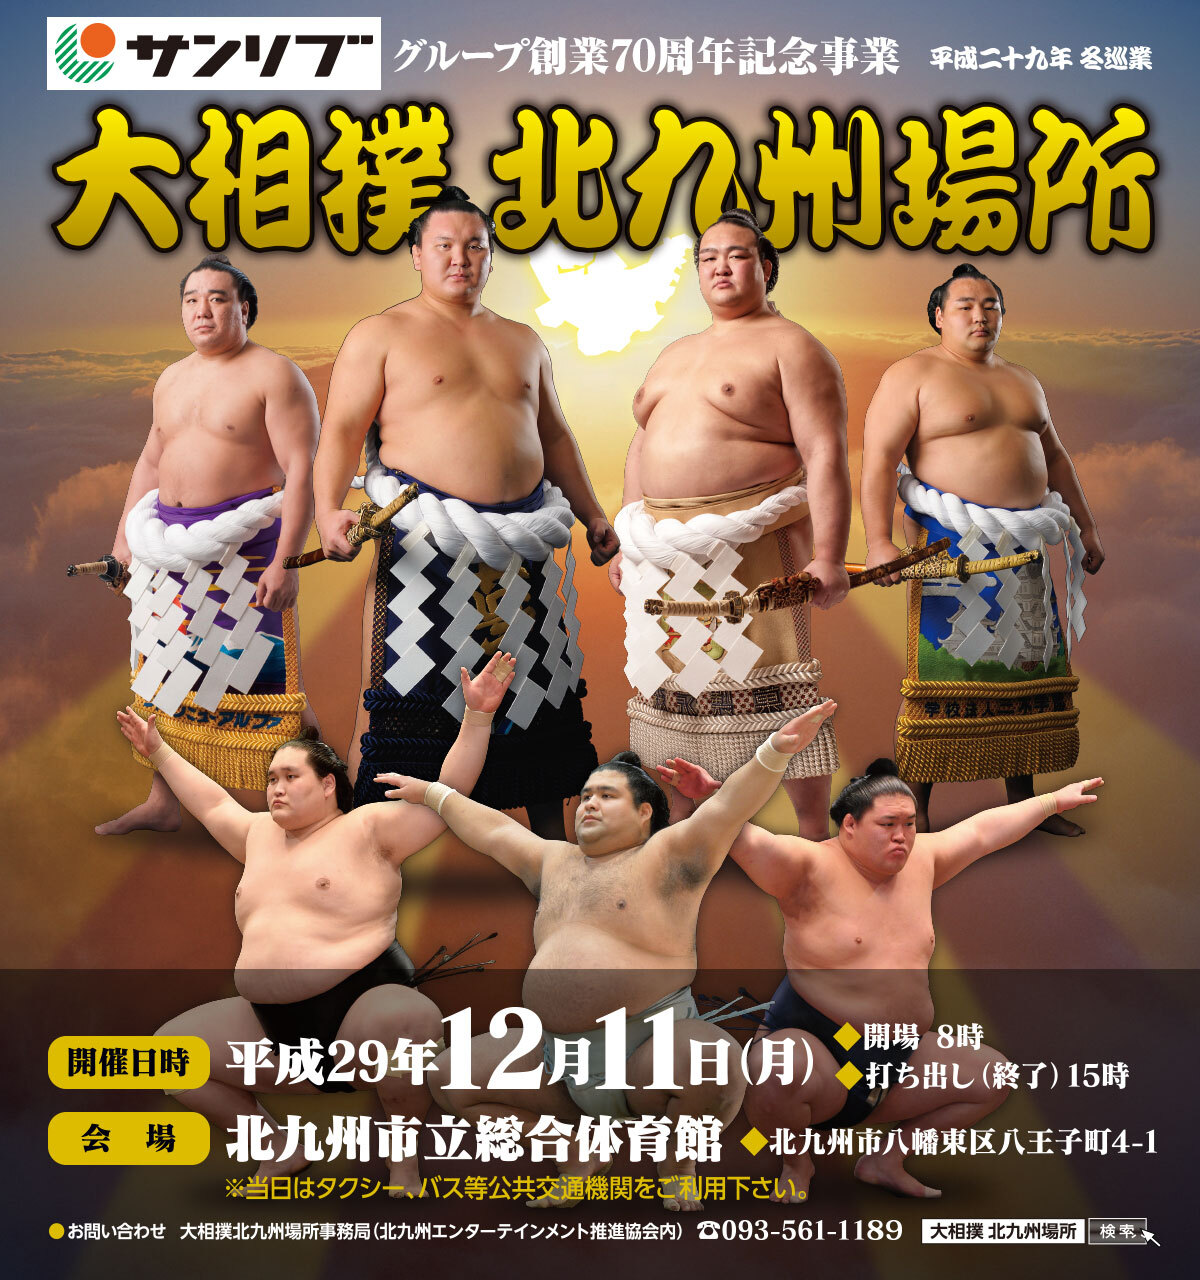 大相撲北九州場所開催決定 今年12月11日(月)北九州市立総合体育館で